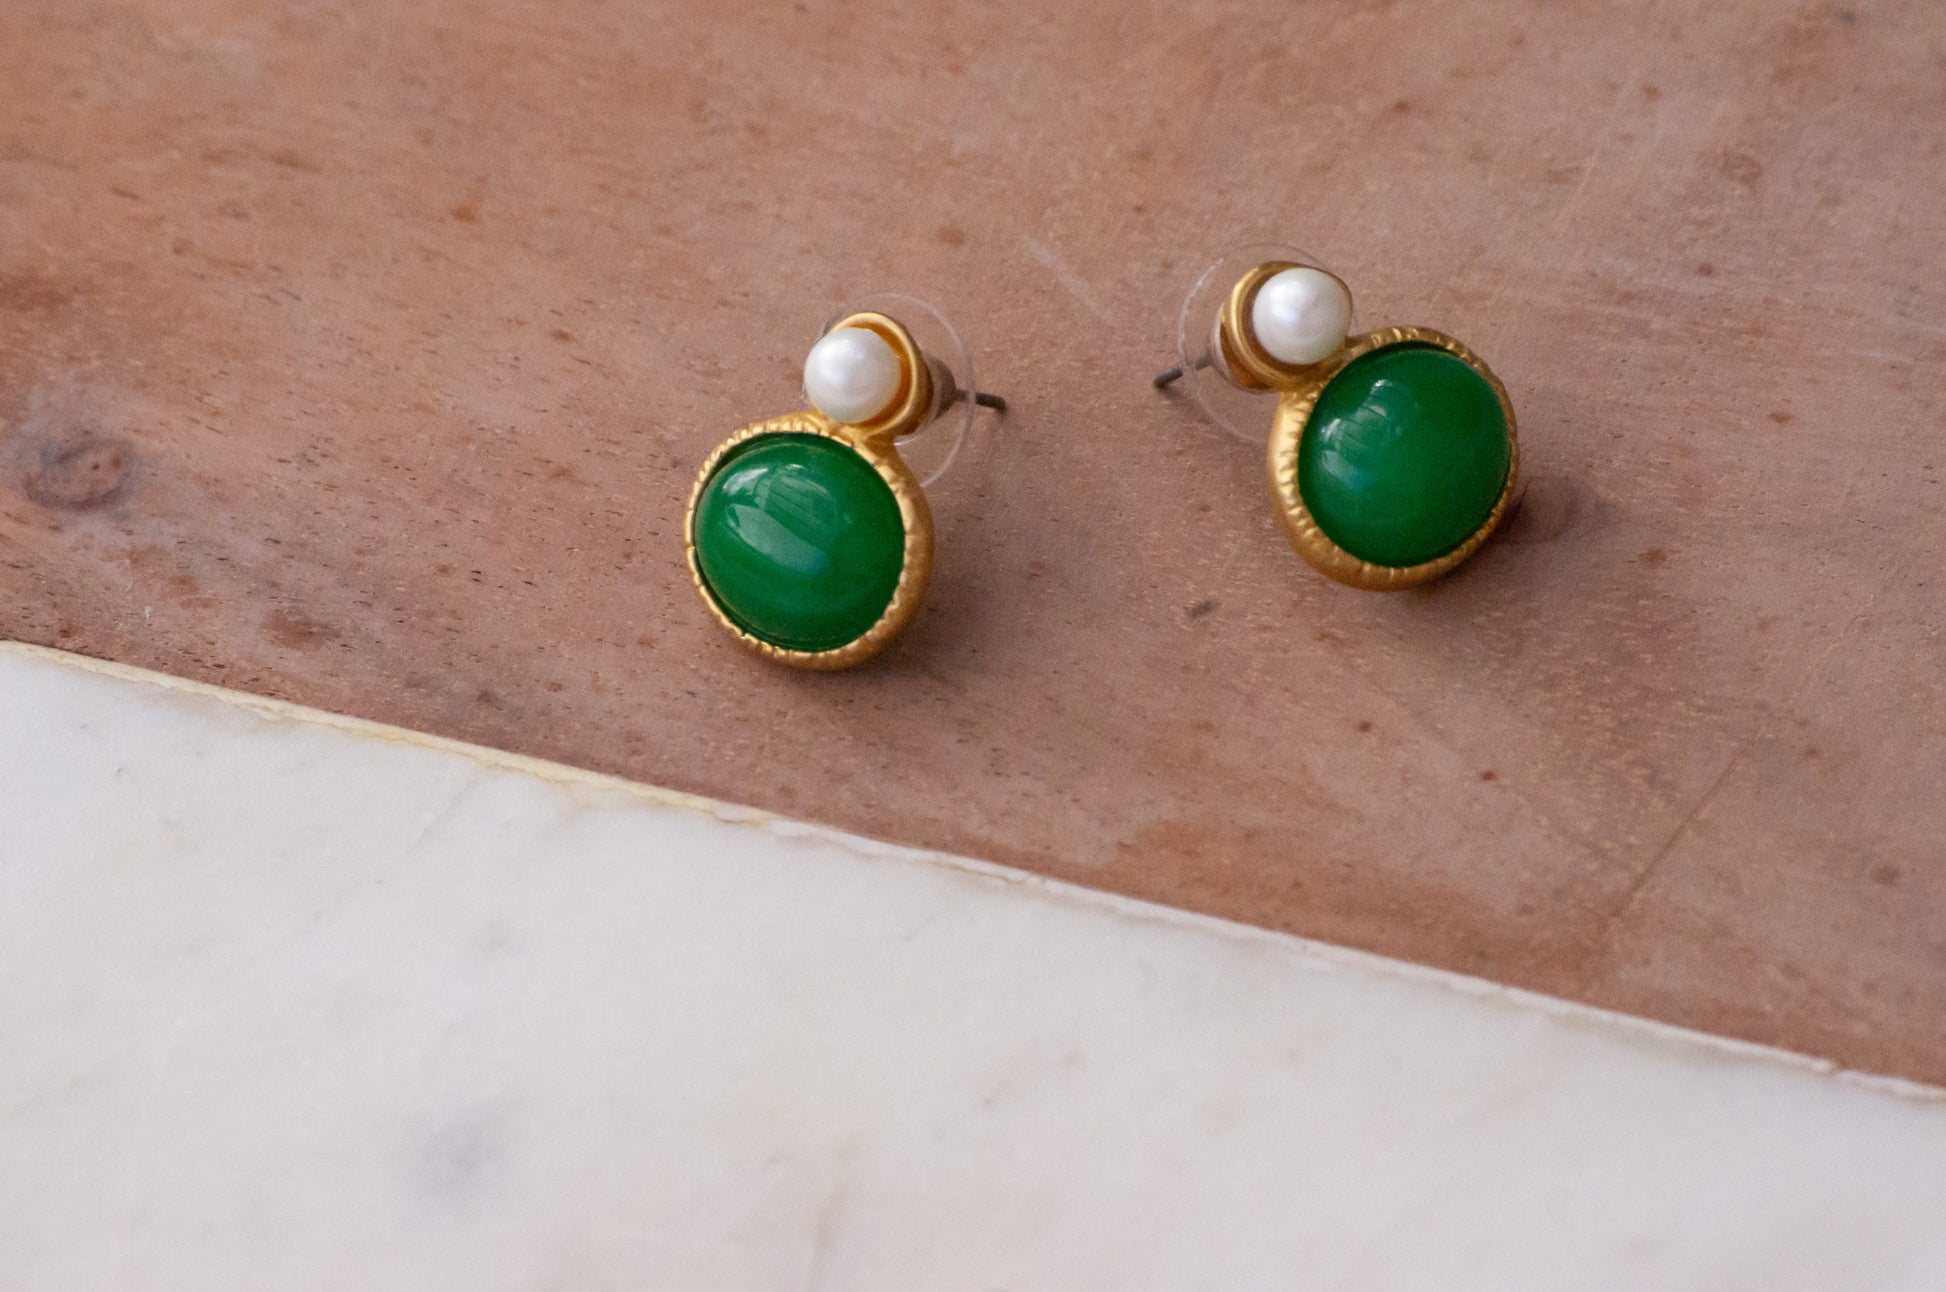 Boucles d'oreilles en métal doré, pierre verte et perle, convient aux oreilles percées.